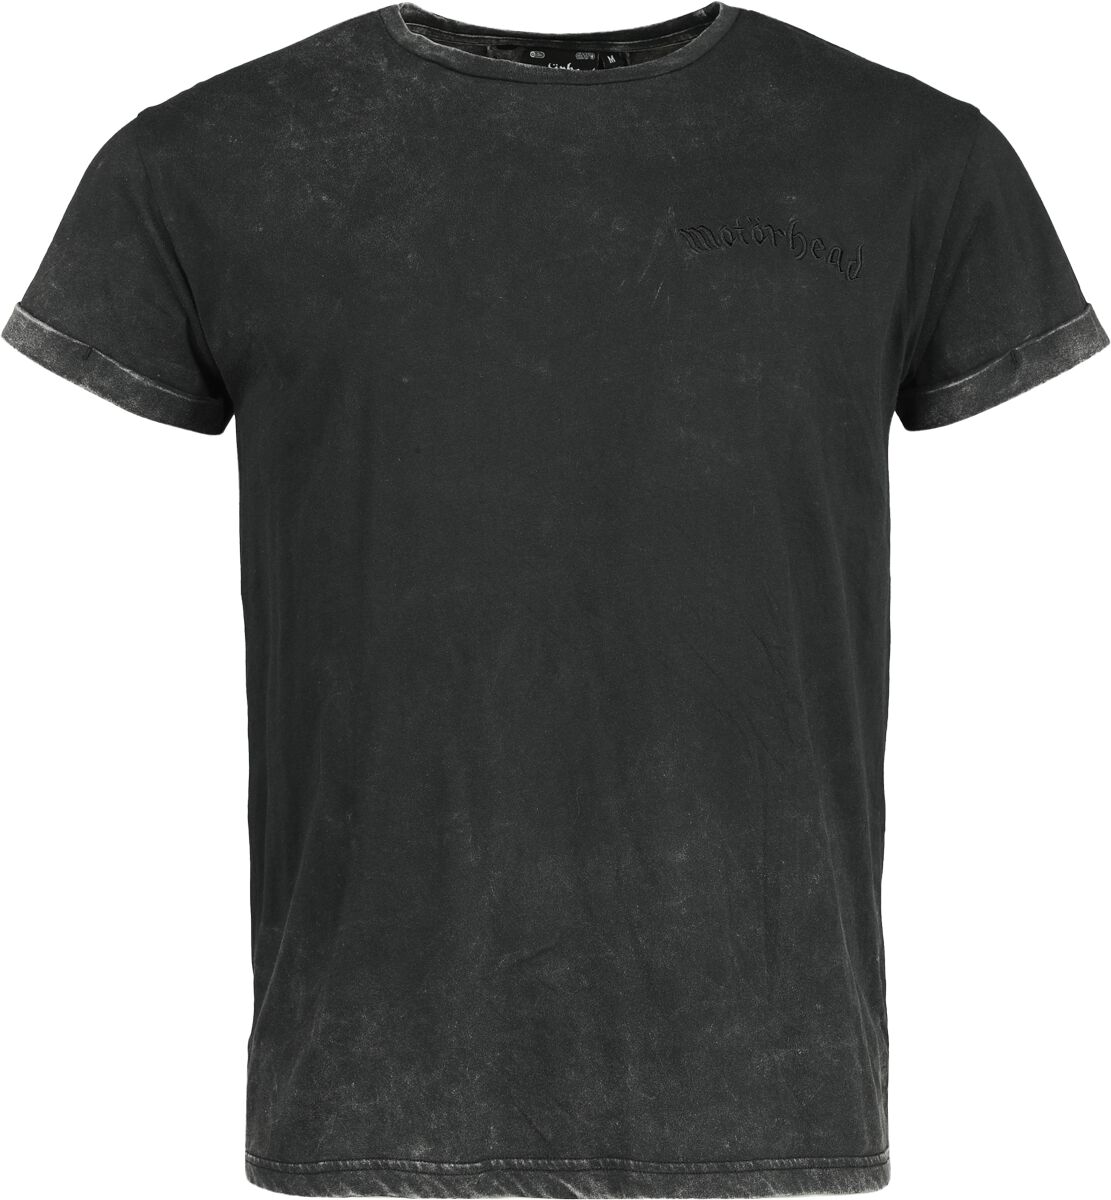 Motörhead T-Shirt - EMP Signature Collection - S bis 3XL - für Männer - Größe 3XL - dunkelgrau  - EMP exklusives Merchandise!